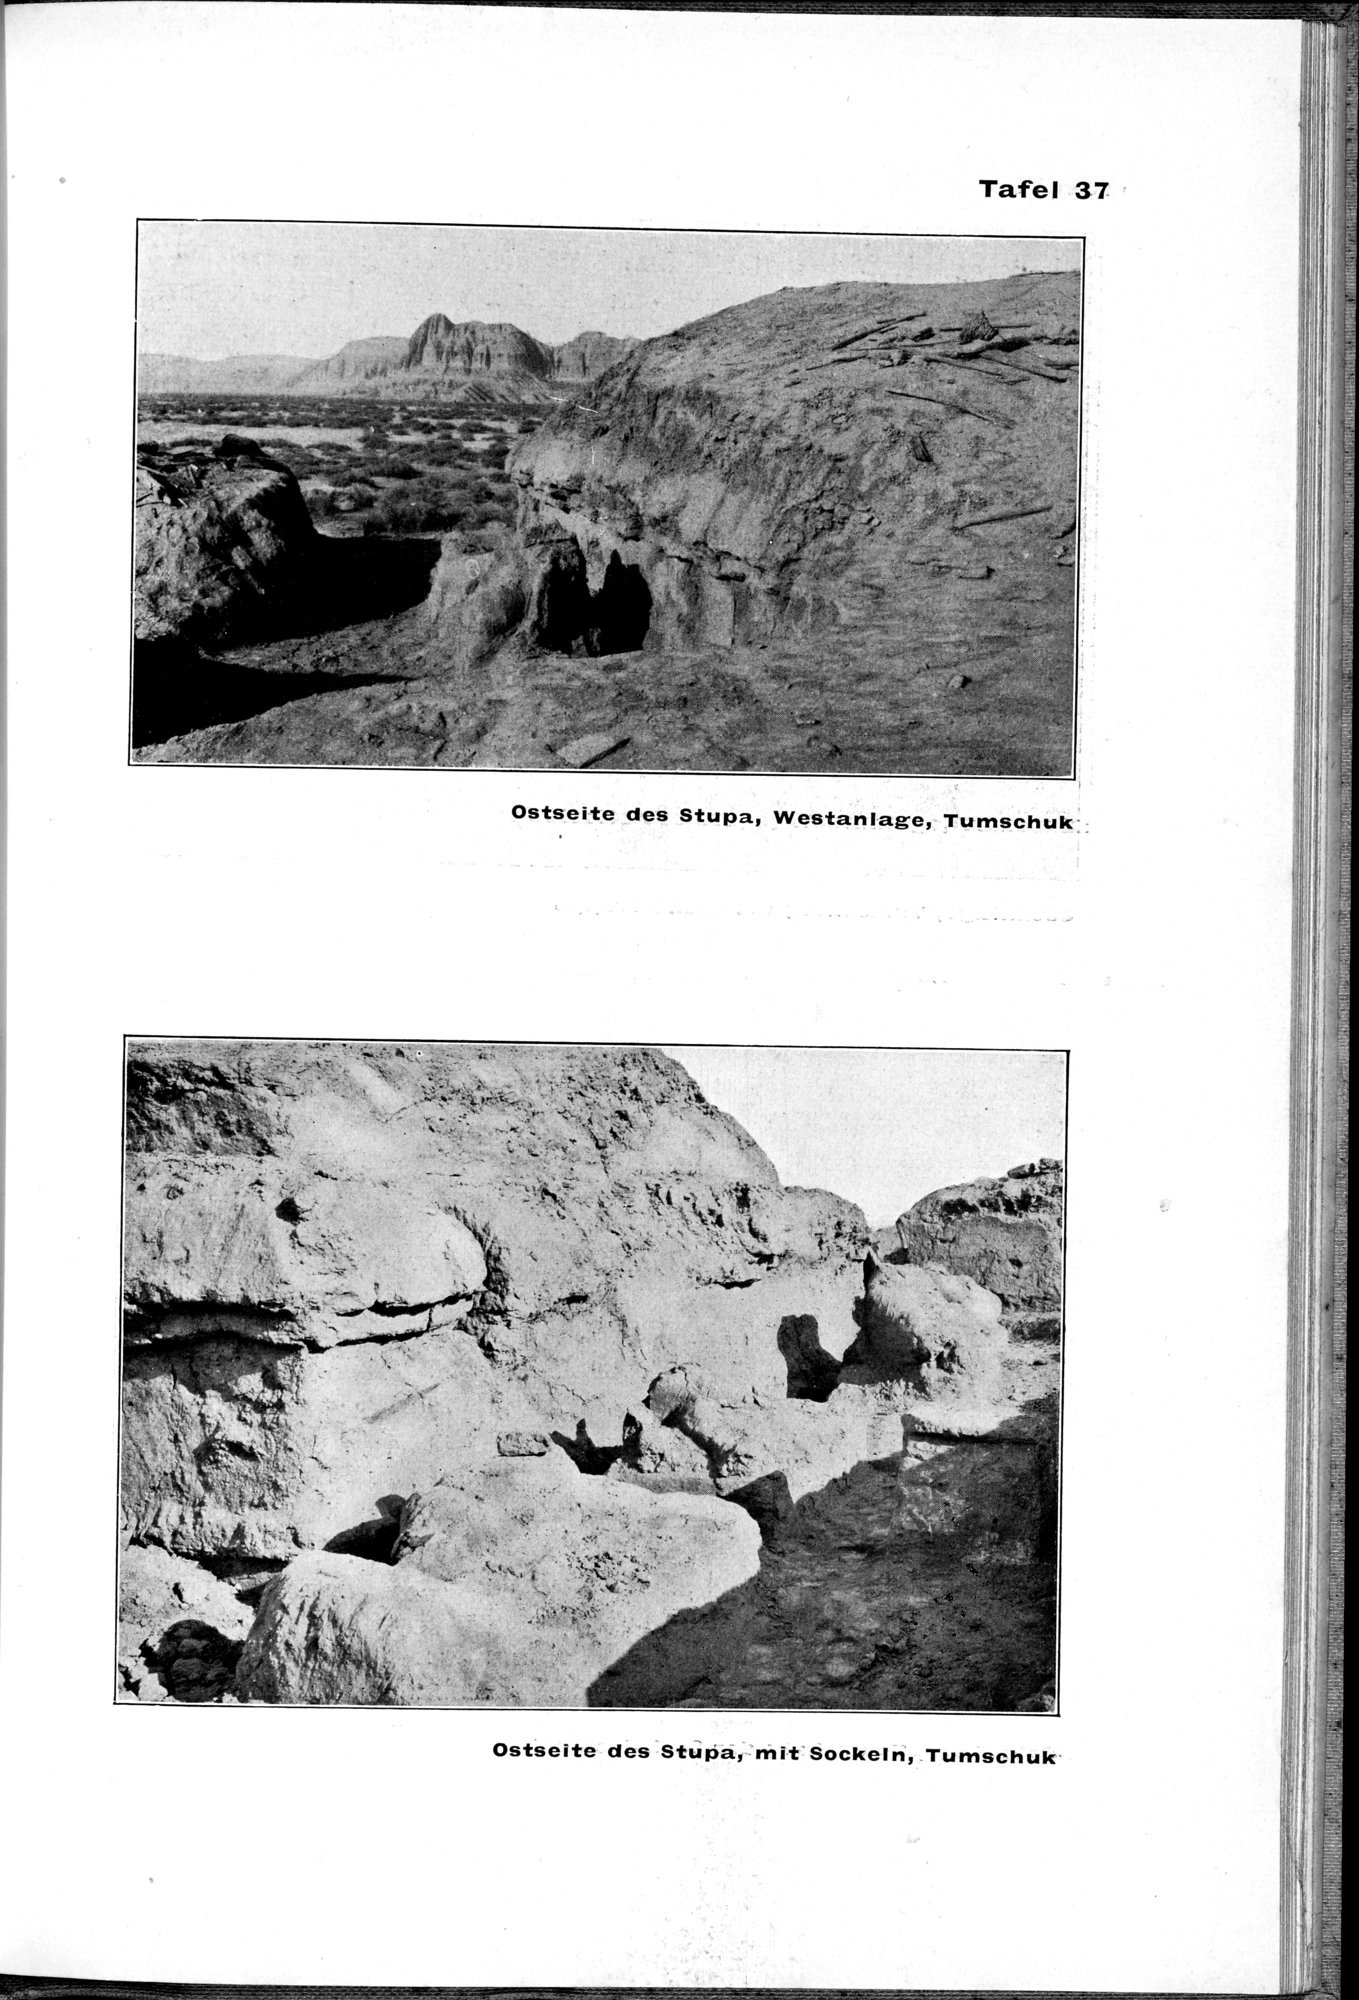 Von Land und Leuten in Ostturkistan : vol.1 / Page 193 (Grayscale High Resolution Image)